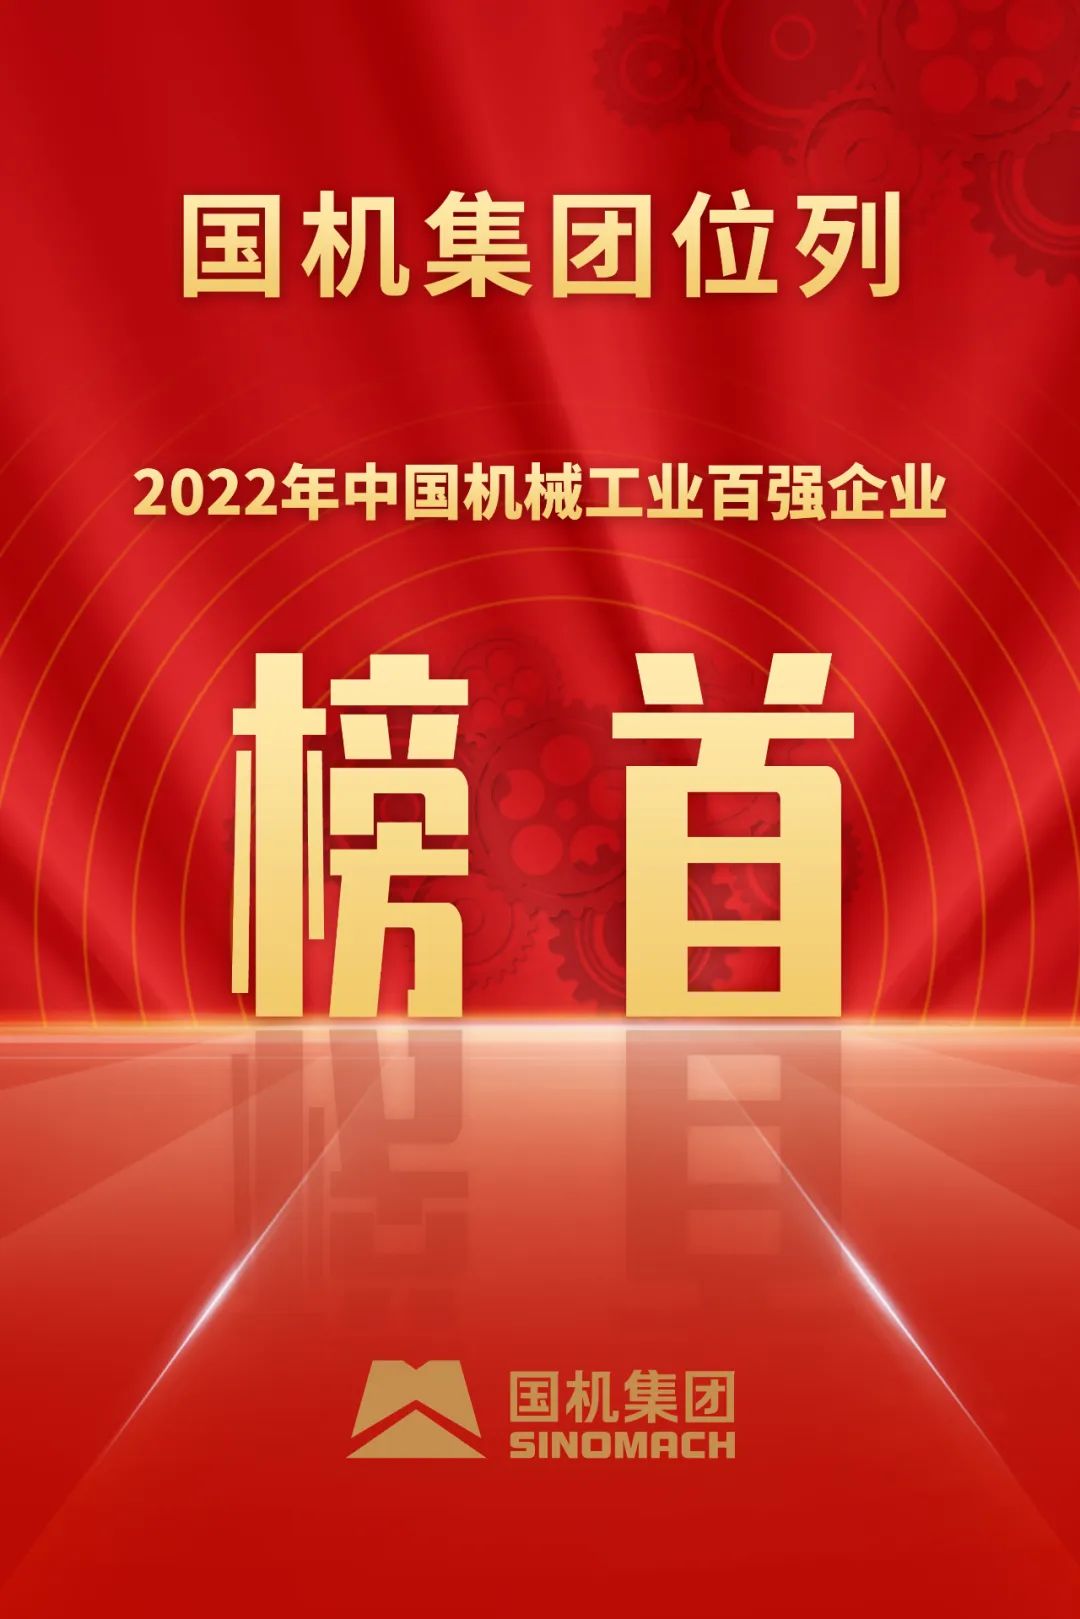 国机集团位列2022年中国机械工业百强企业榜首